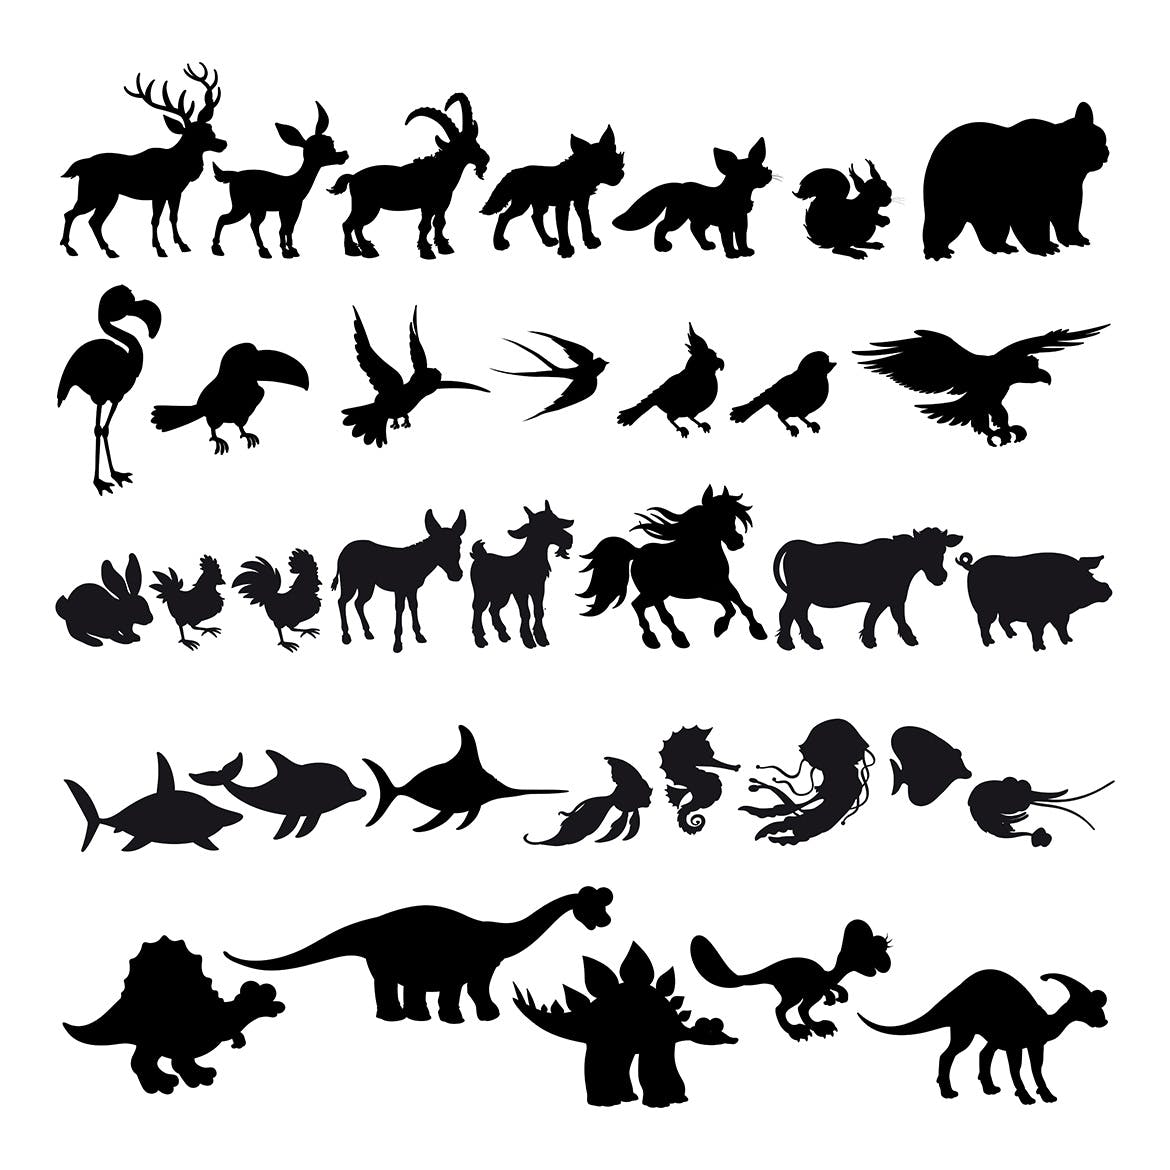 卡通动物剪影矢量插画蚂蚁素材精选素材 Silhouettes of Cartoon Animals插图(1)